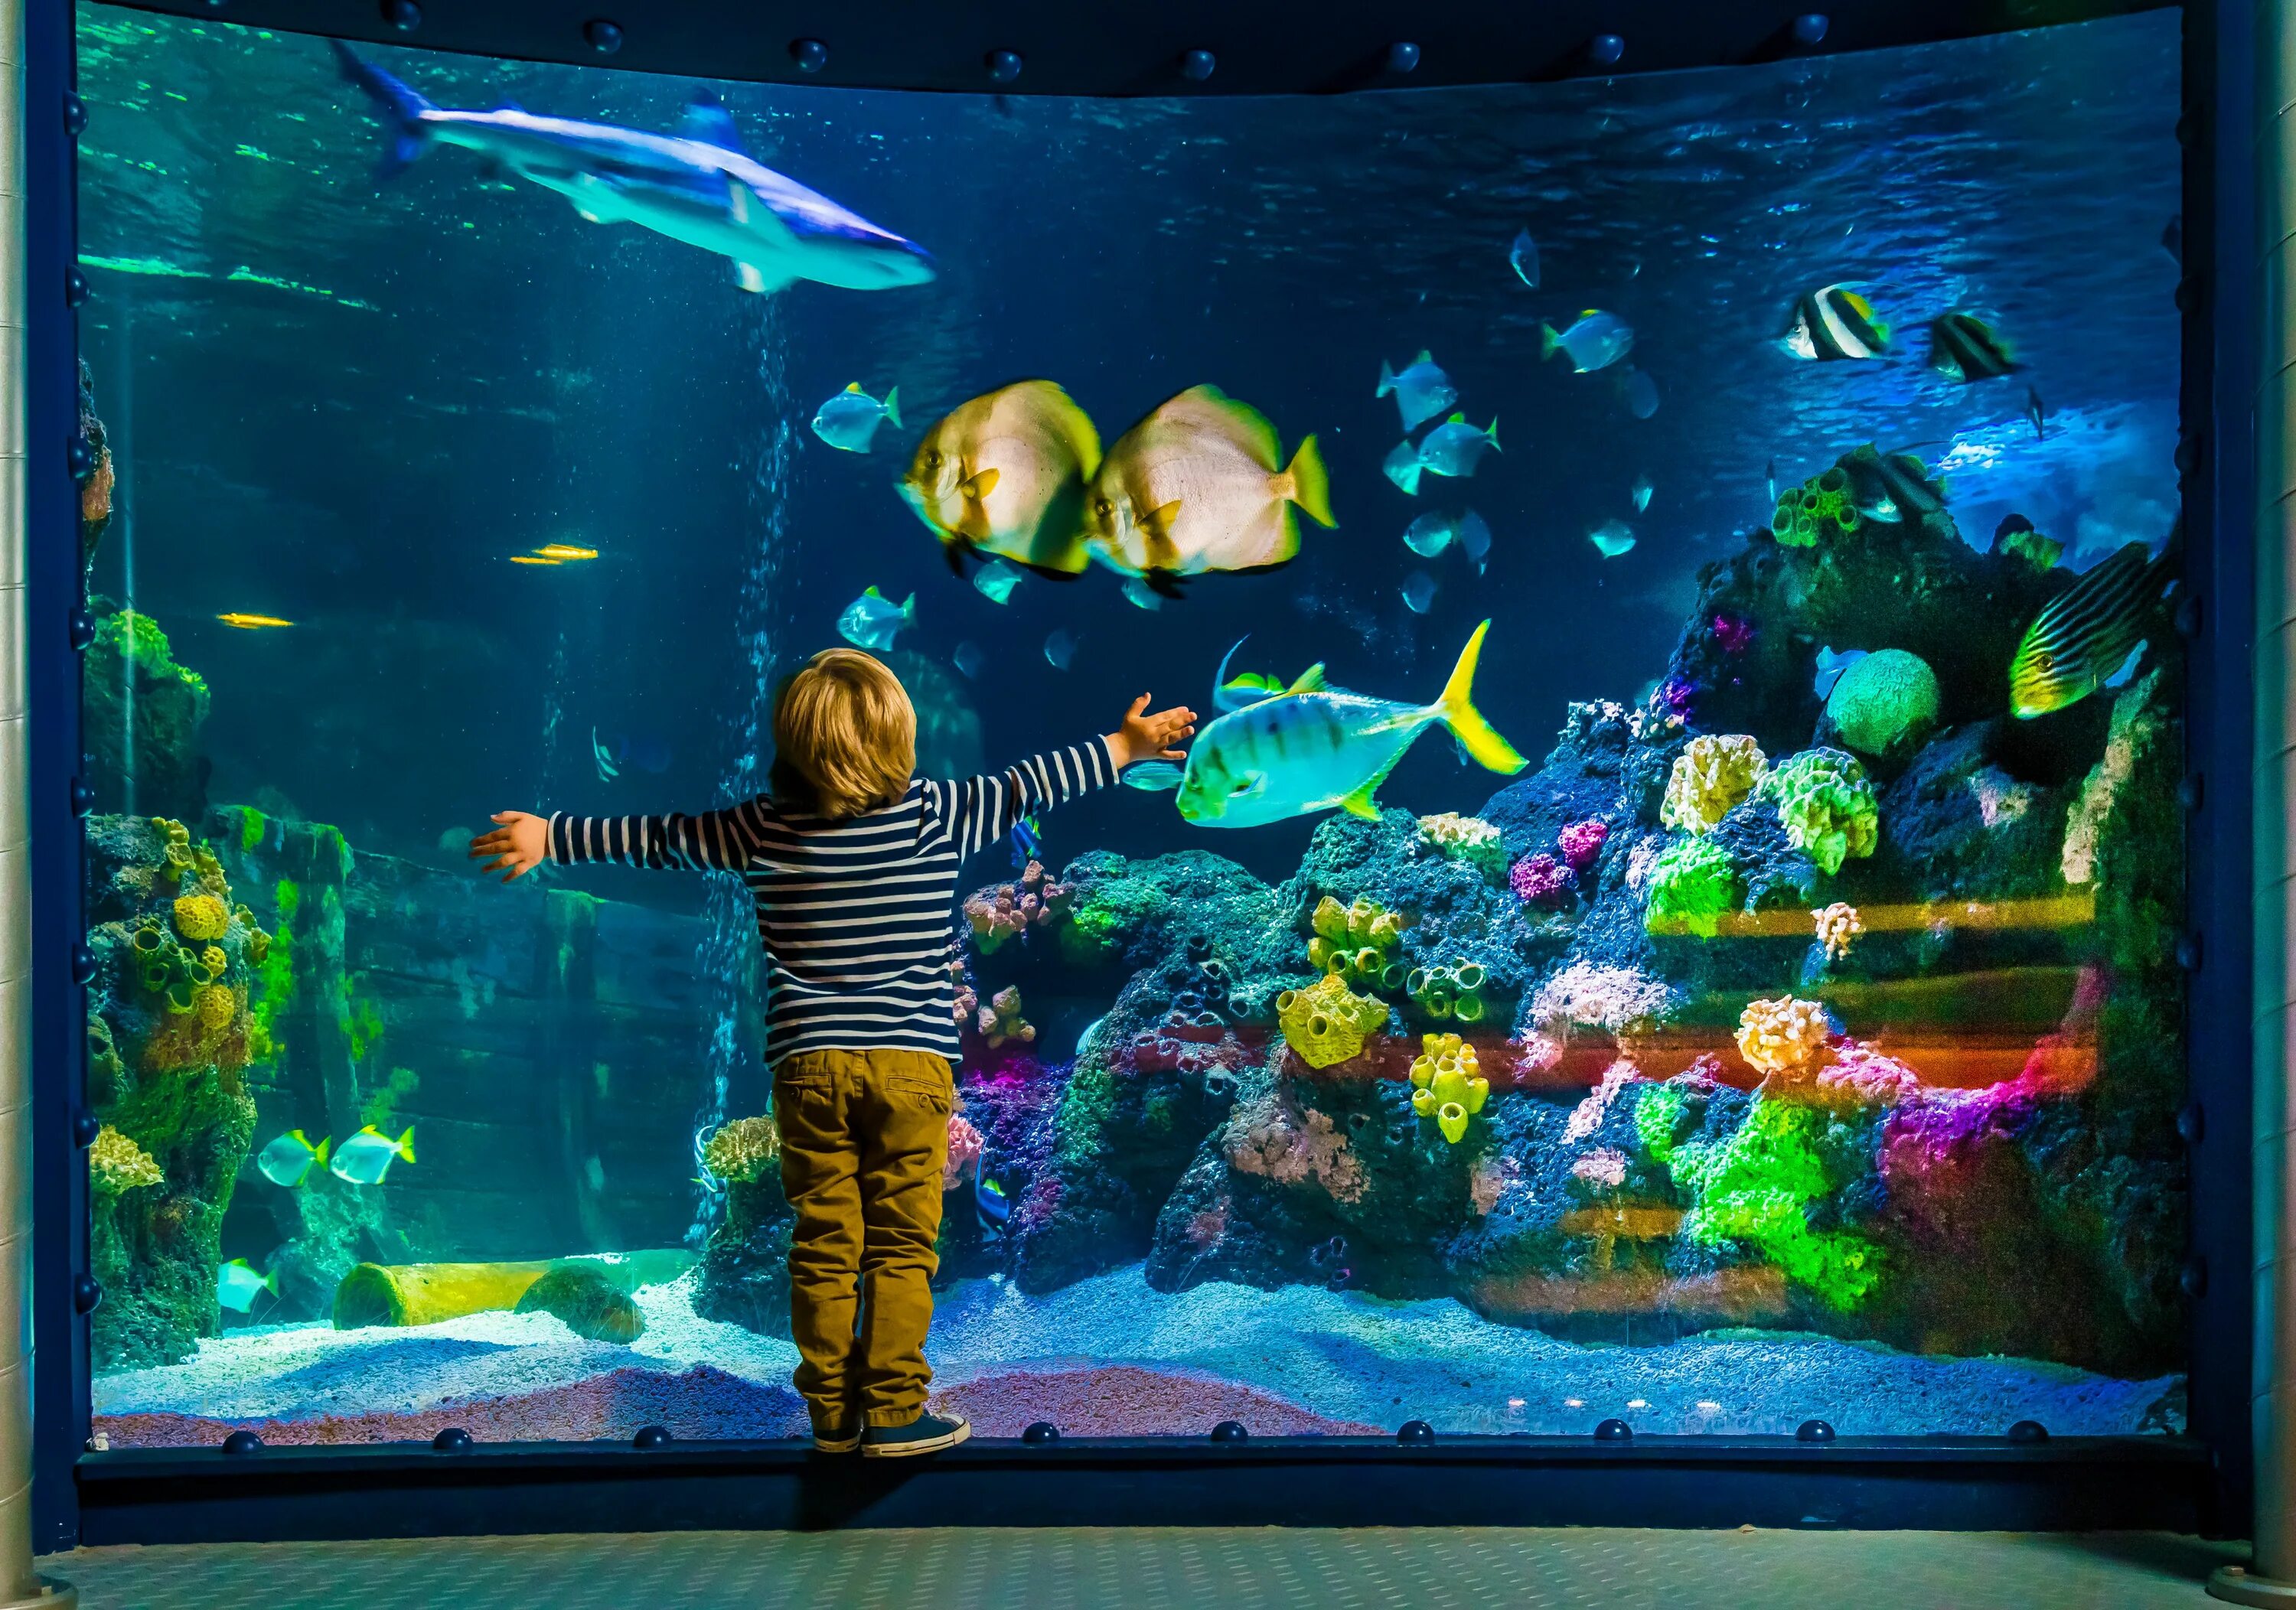 Аквариум Sea Life. Океанариум в Стамбуле Sealife. Огромный аквариум. Большой аквариум с рыбками. Увидел рыбок в аквариуме